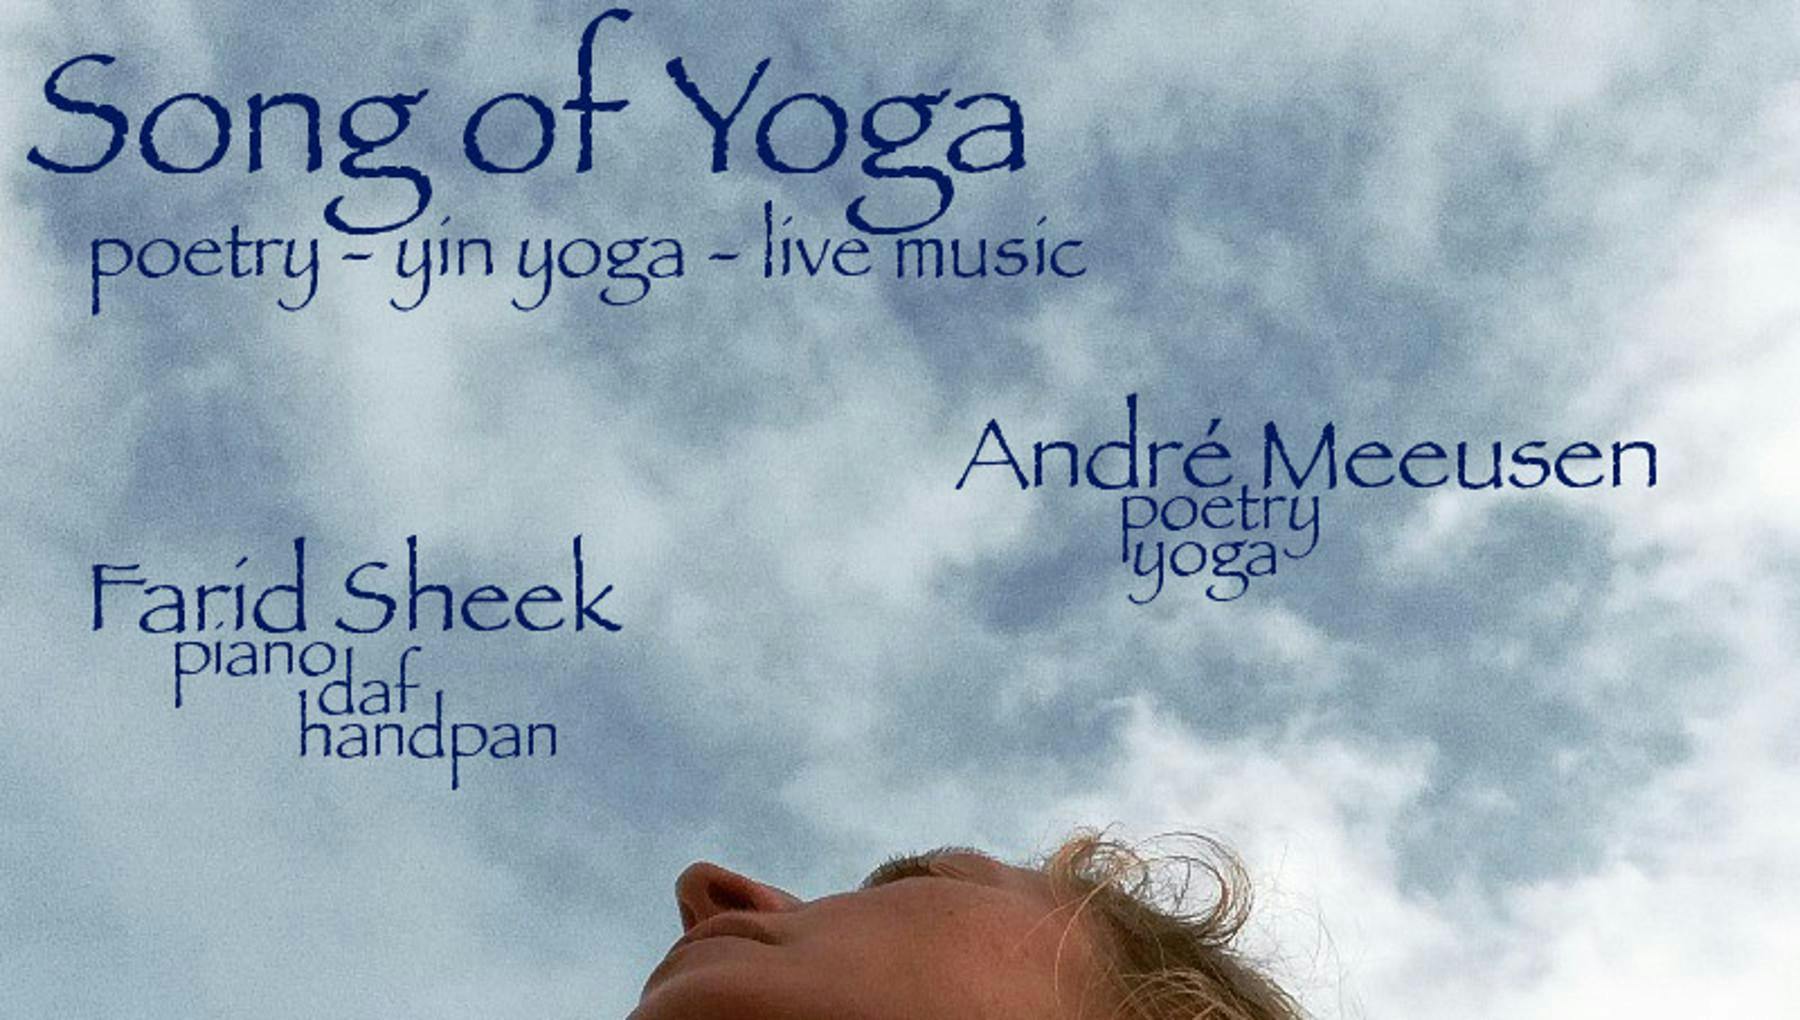 Yogaconcert | poëzie, yin yoga en live muziek met Farid Sheek